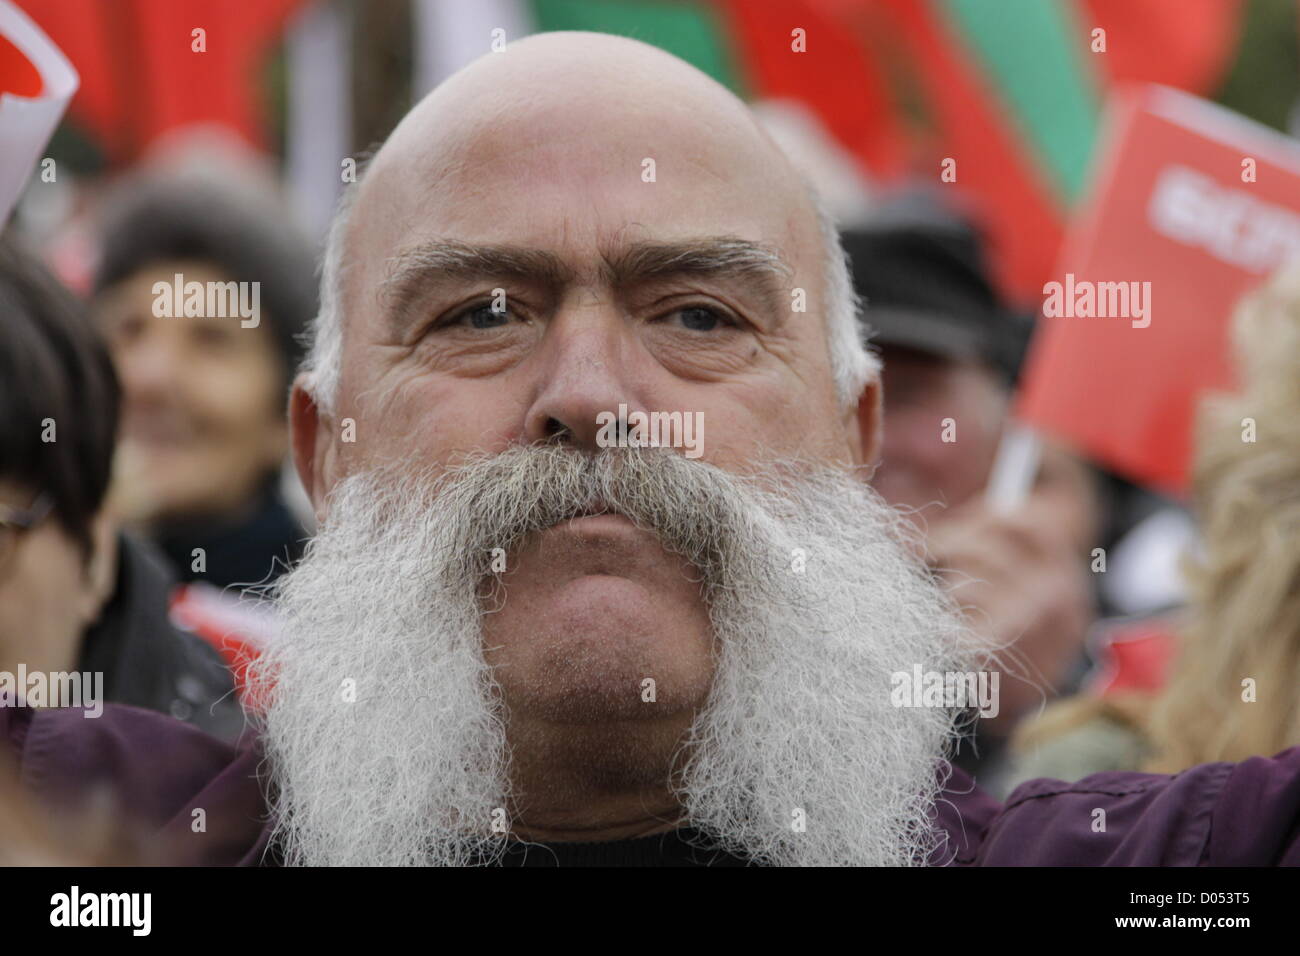 Sofia, Bulgarie. 17 novembre 2012. Homme avec big moustache dans la foule  des manifestants anti-austérité, Parti socialiste bulgare et de drapeaux à l'arrière-plan.  Plusieurs étaient de vieux drapeaux de parti communiste de